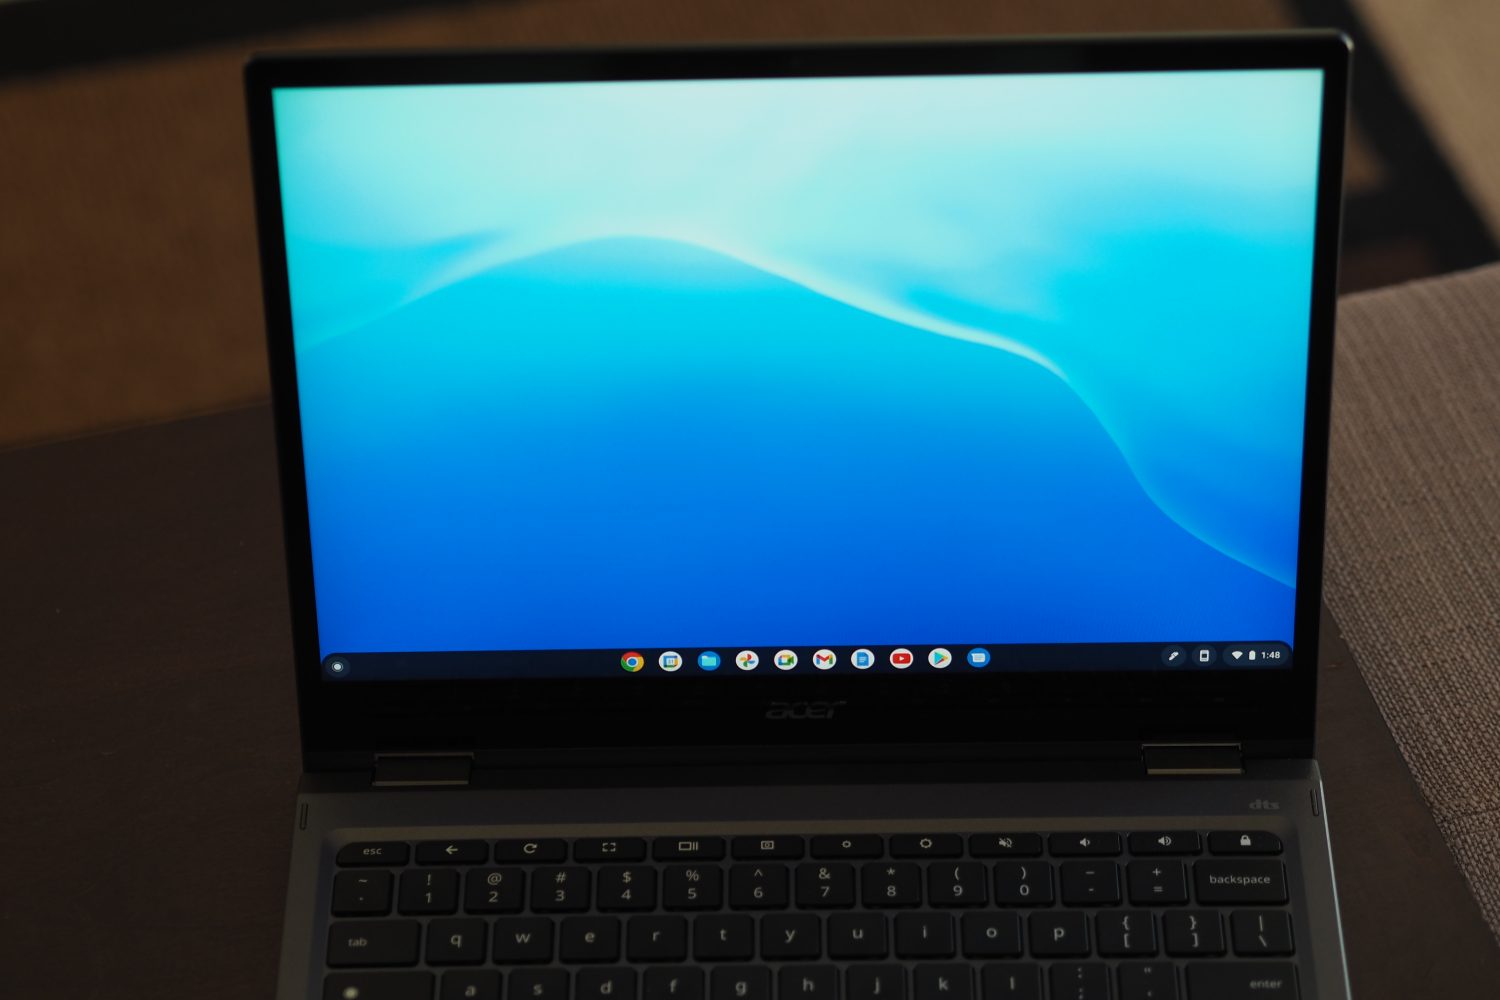 Vista frontal do Acer Chromebook Spin 513 mostrando a tela.